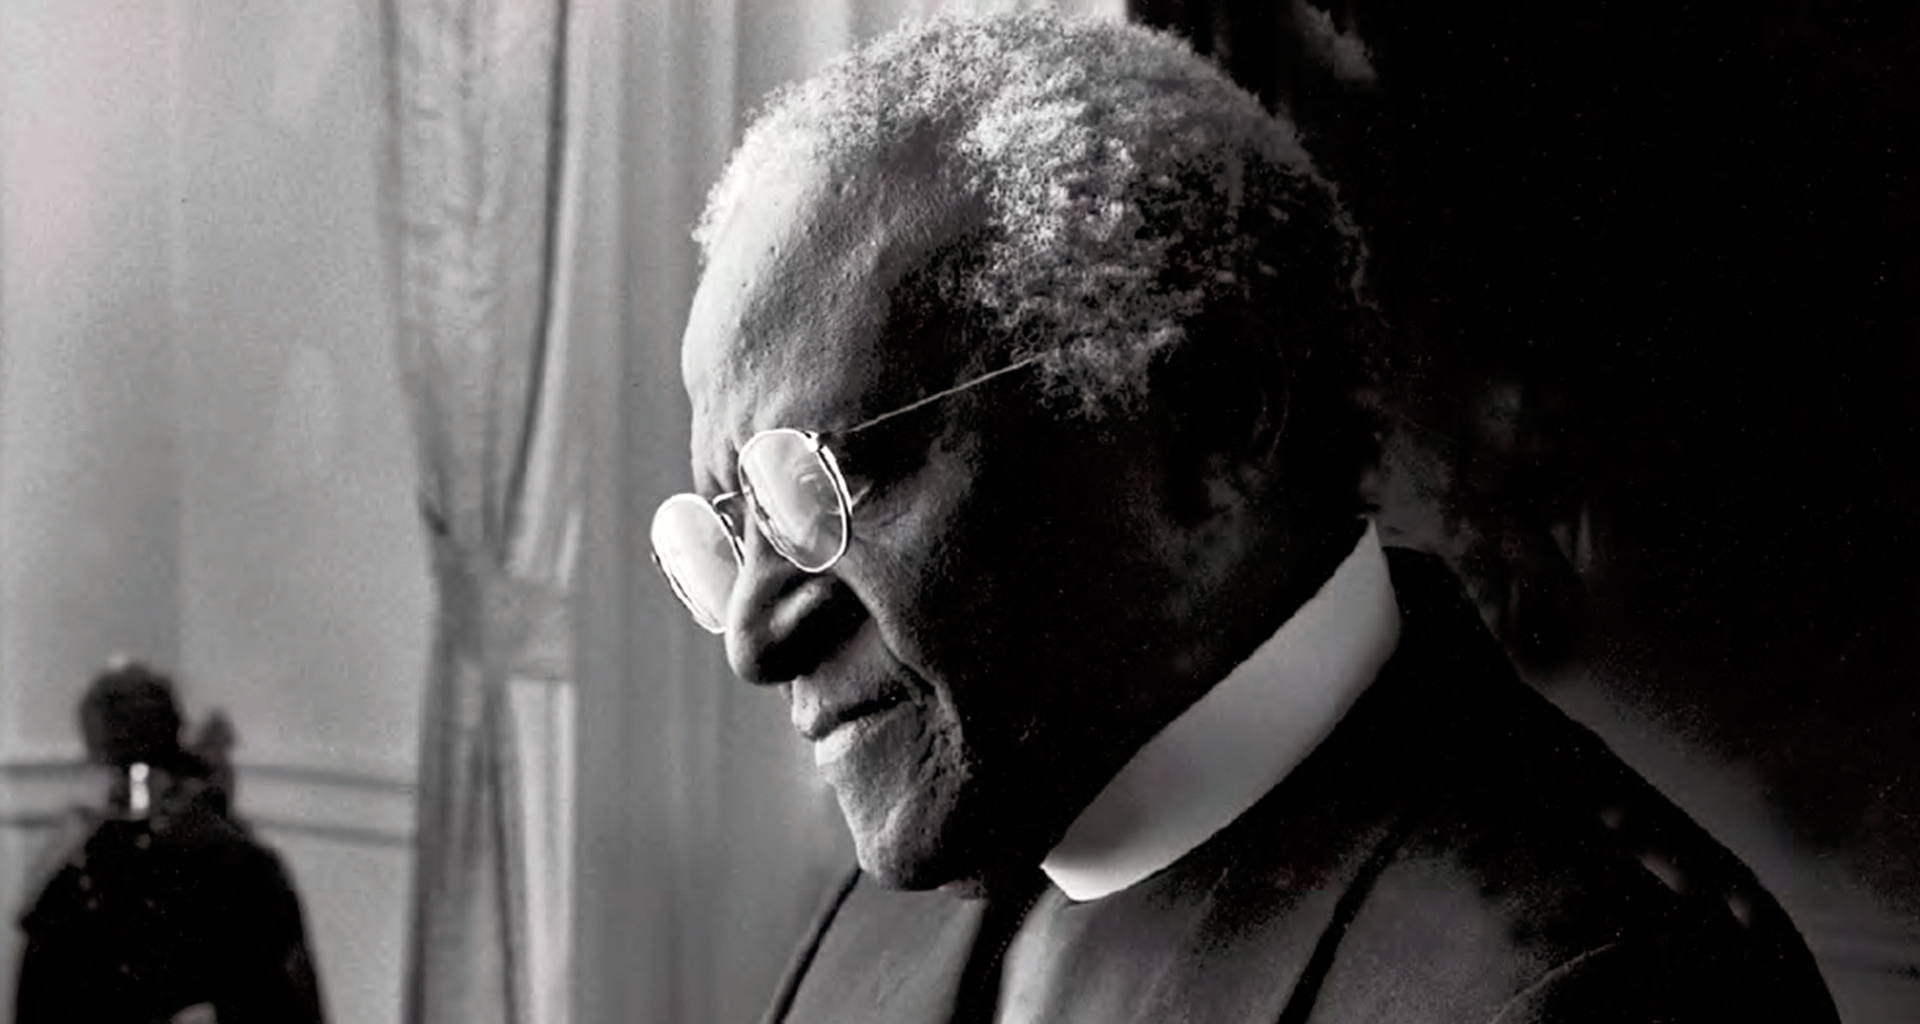 RFKSpain Nos deja el Arzobispo Desmond Tutu